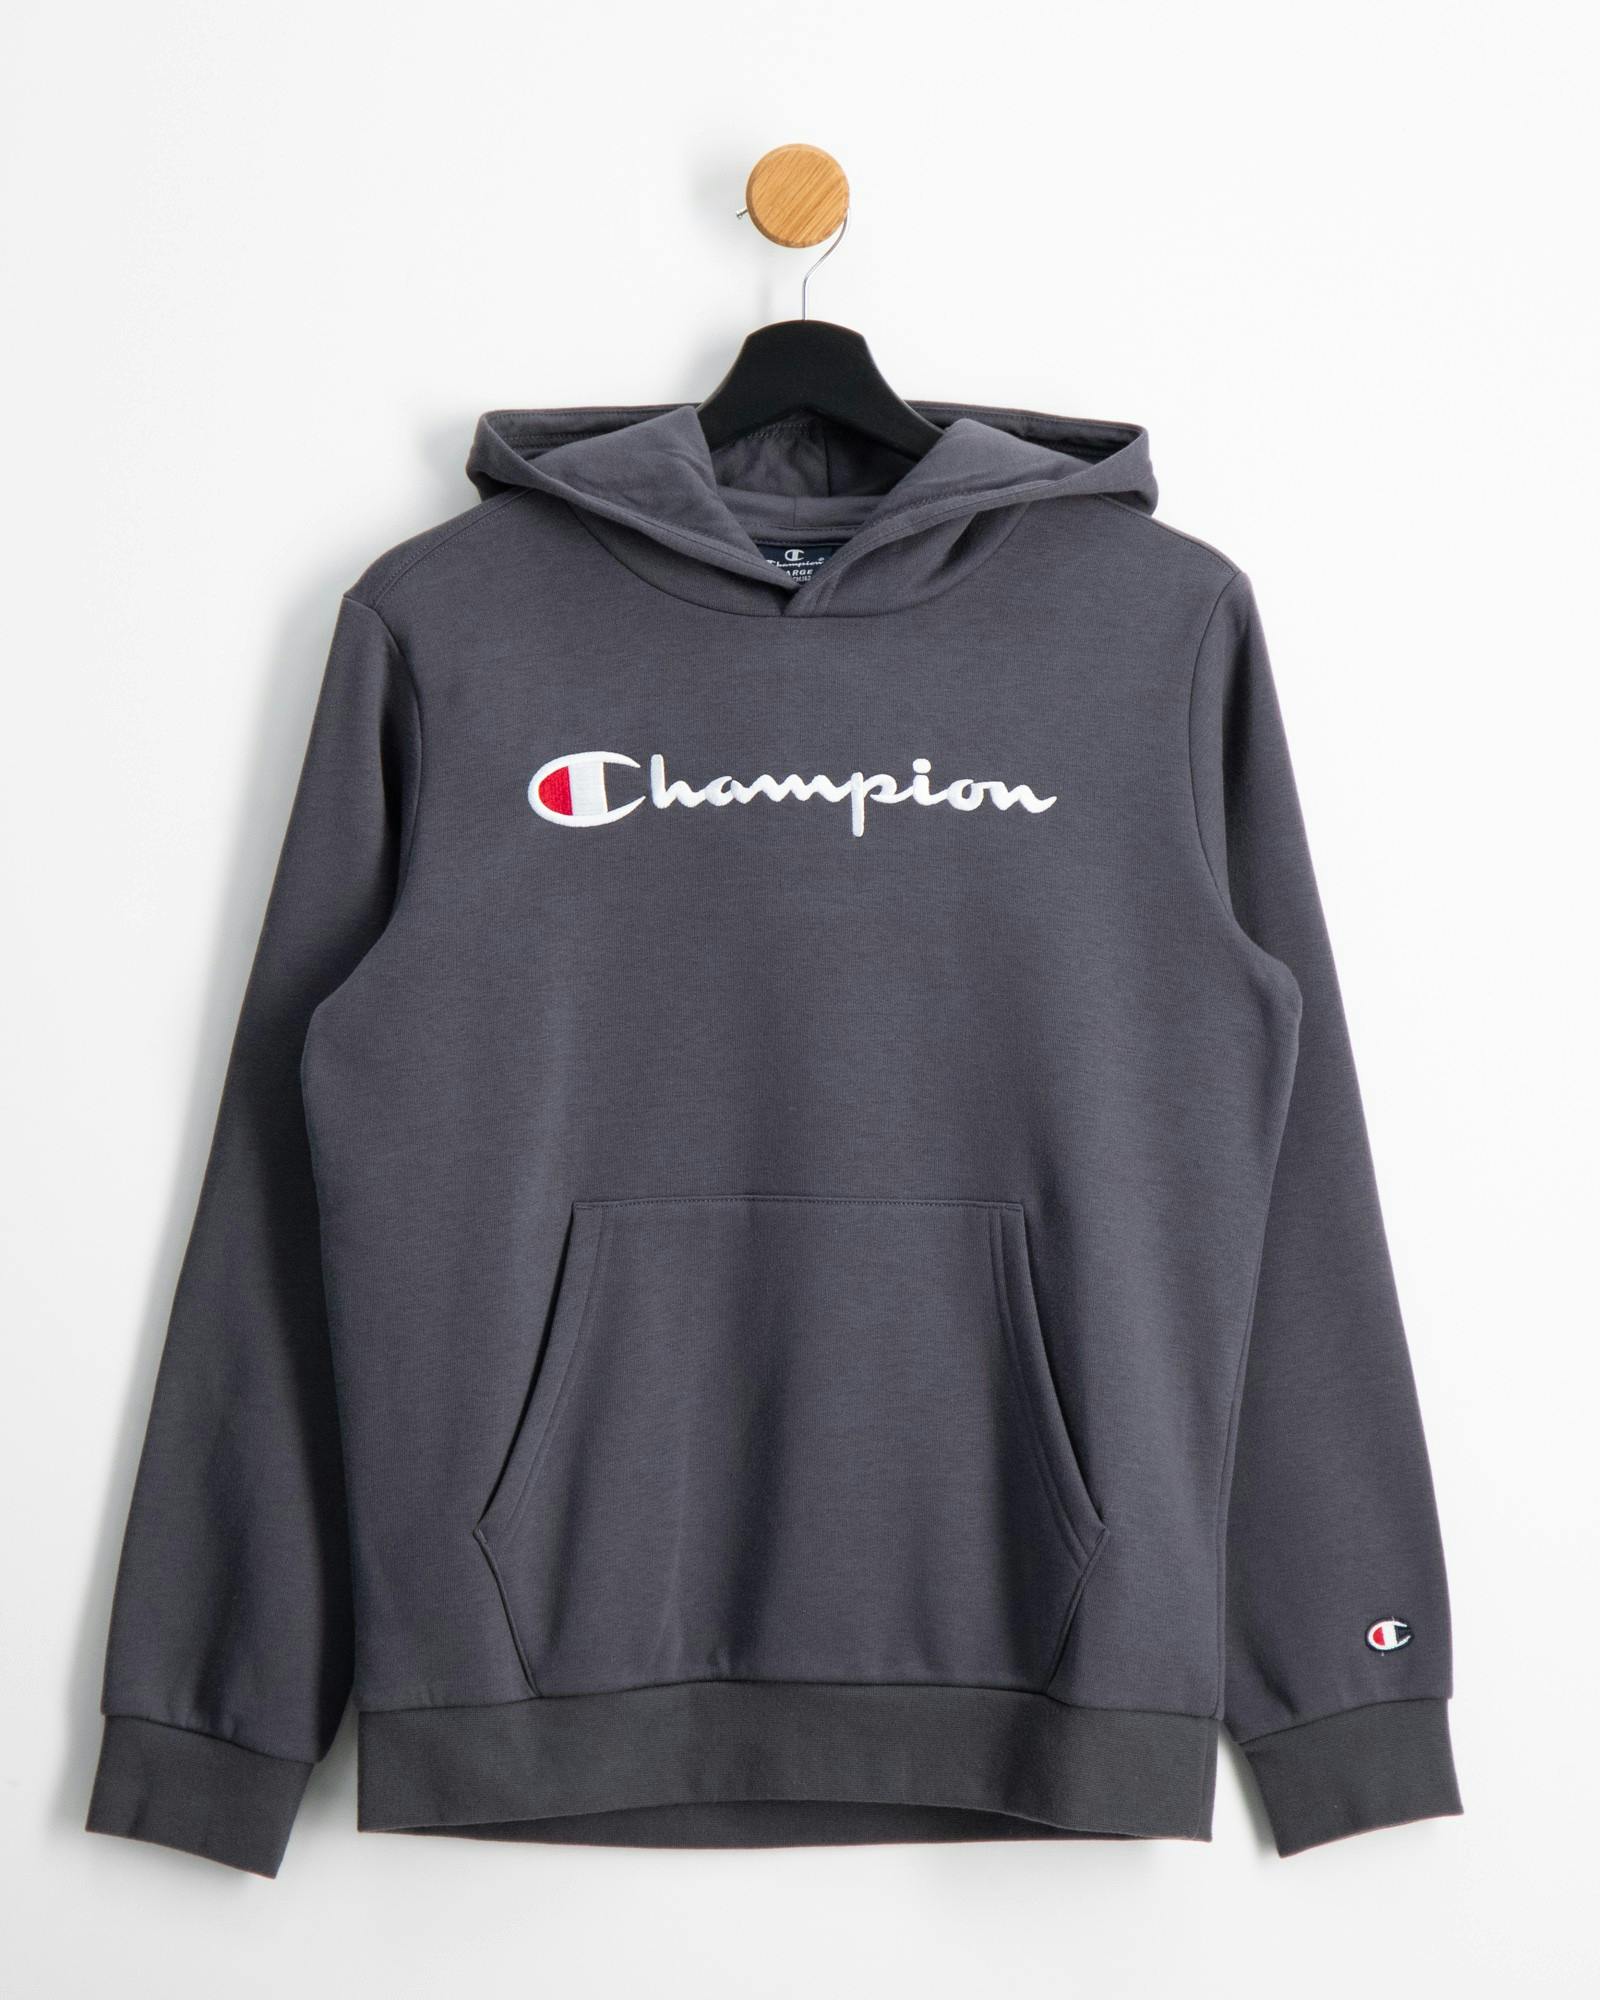 Champion für Kinder und Jugendliche | Kids Brand Store